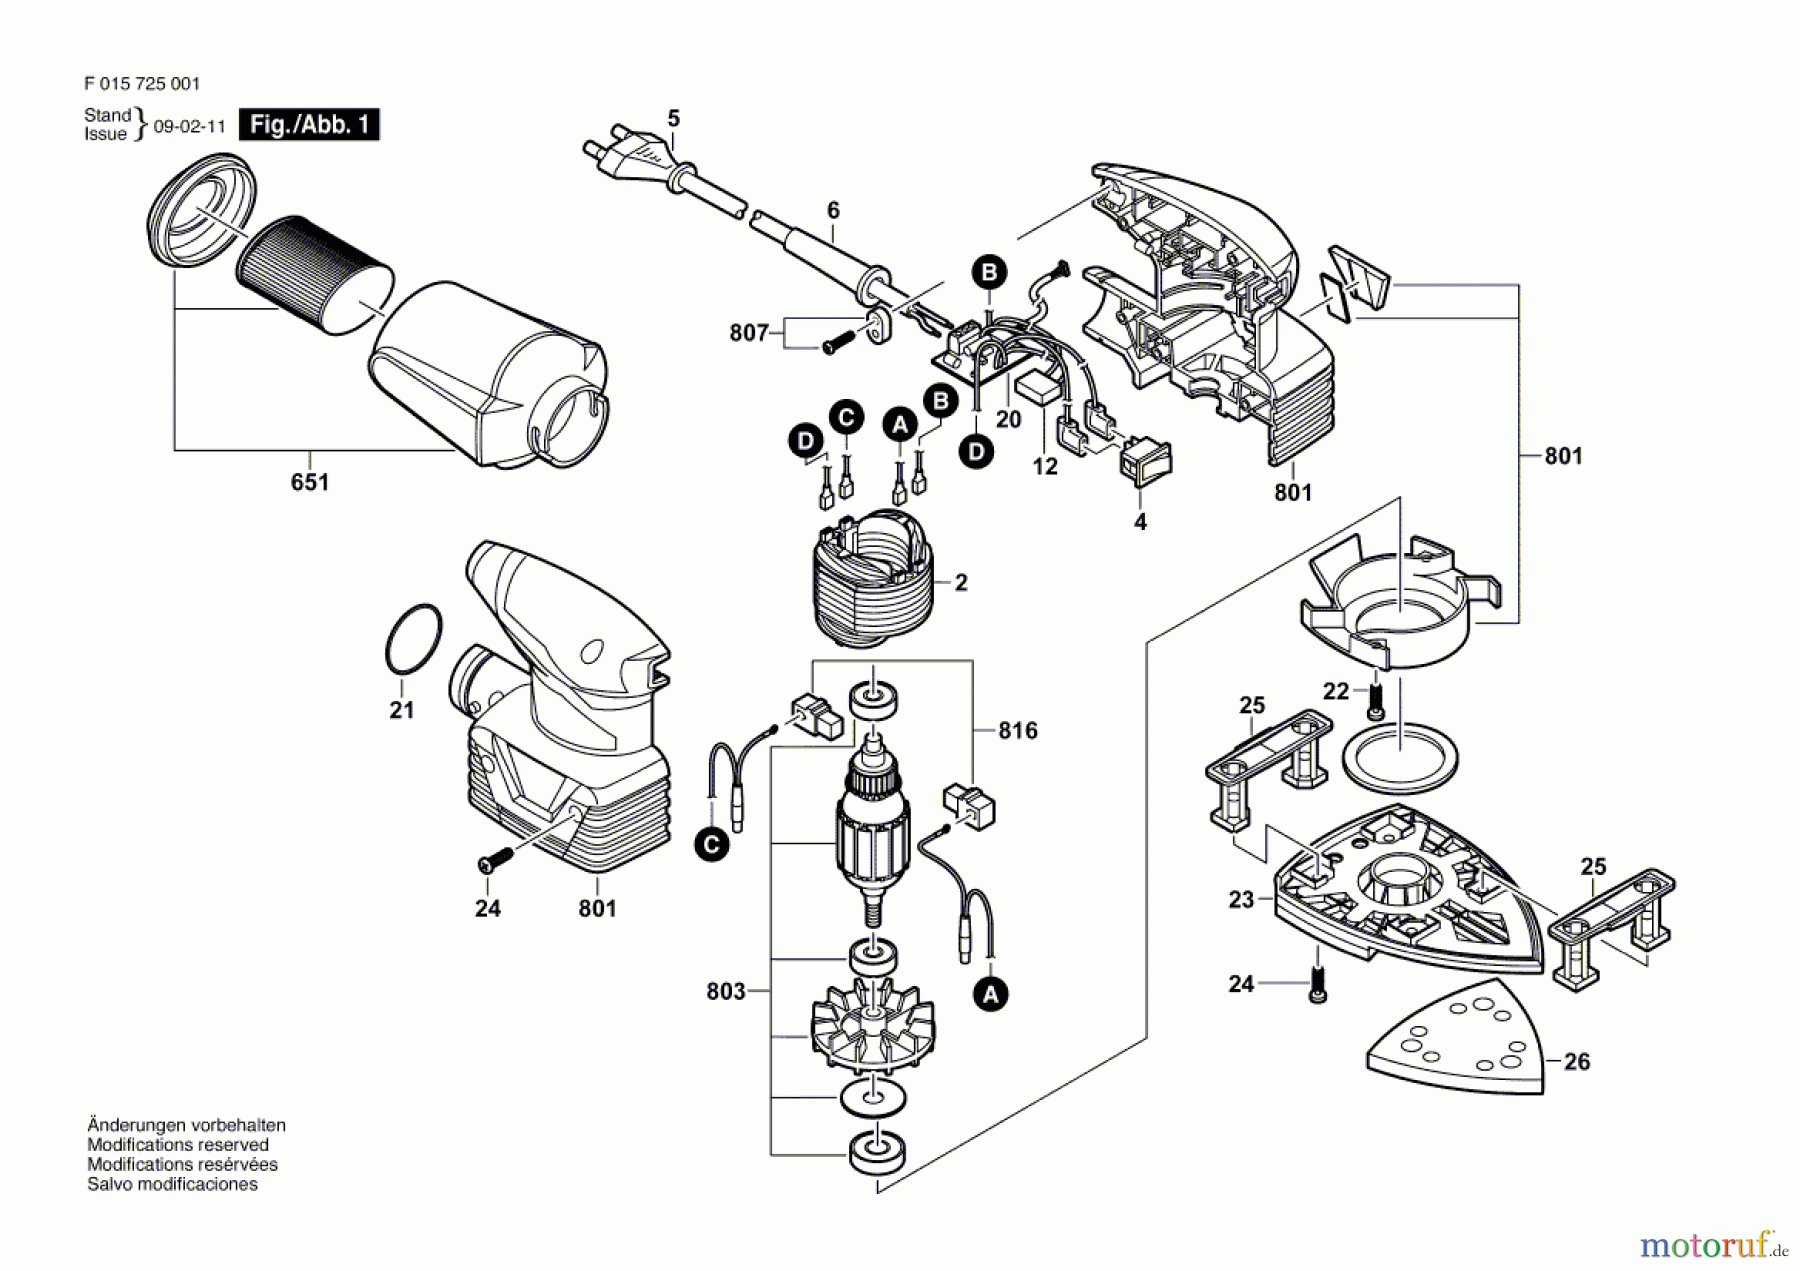  Bosch Werkzeug Hw-Deltaschleifer 7250 Seite 1